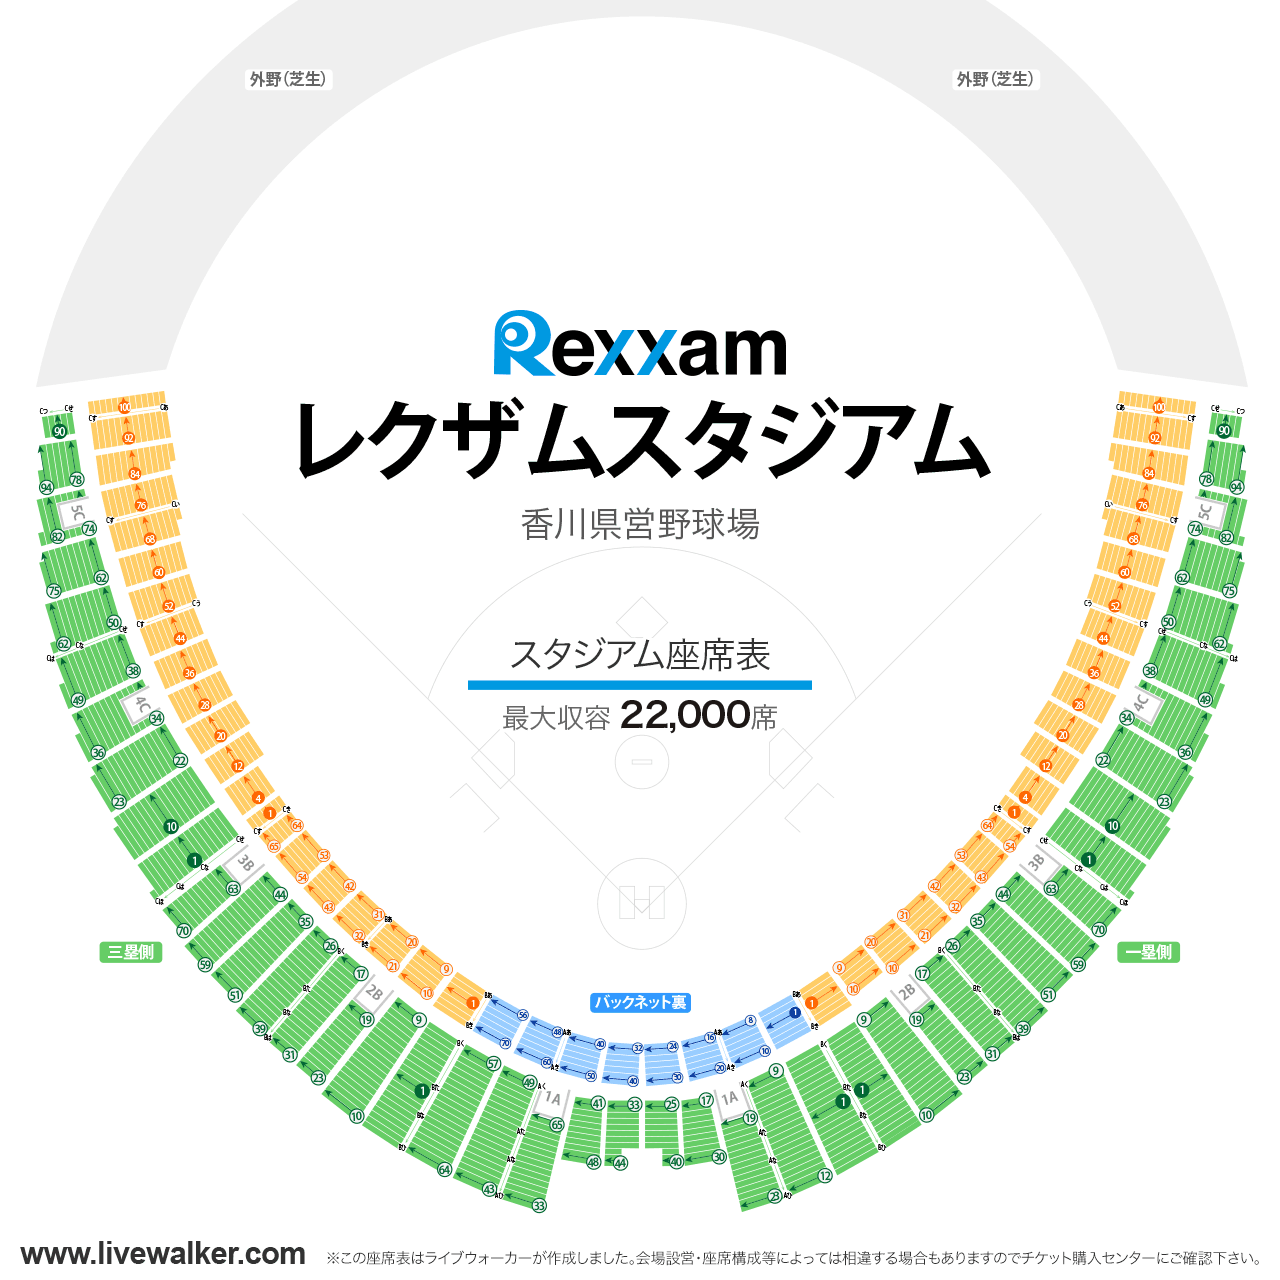 レクザムスタジアム（香川県営野球場）スタジアムの座席表